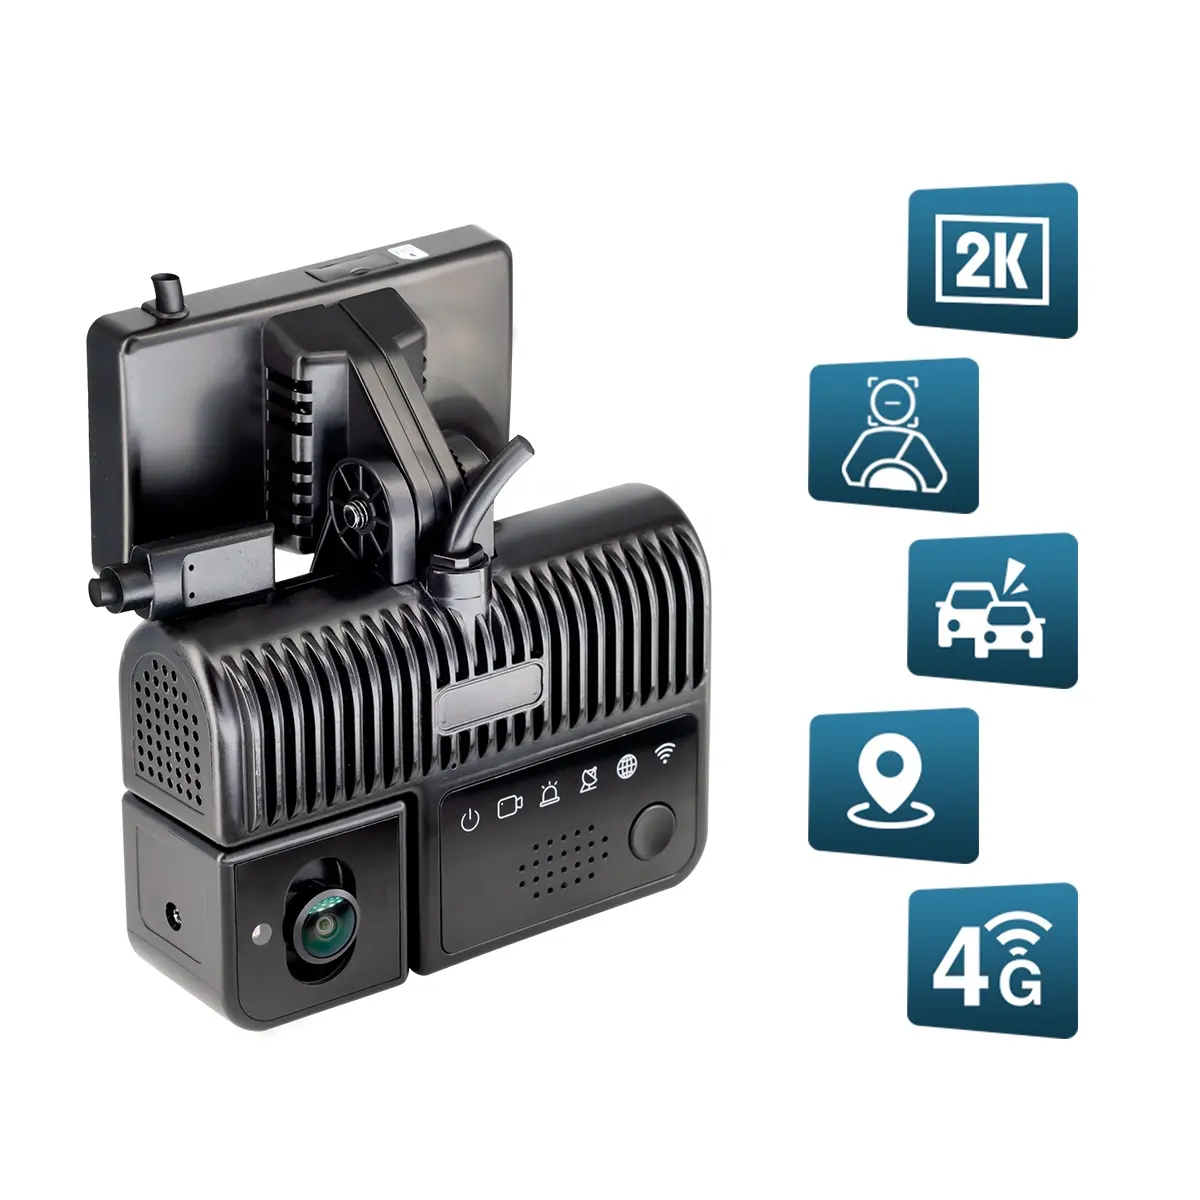 स्टोनकैम 2 के जीपीएस wdr adas 4g ai dashcam वीडियो रिकॉर्डर के साथ ट्रक के लिए थकान का पता लगाने वाला कैमरा